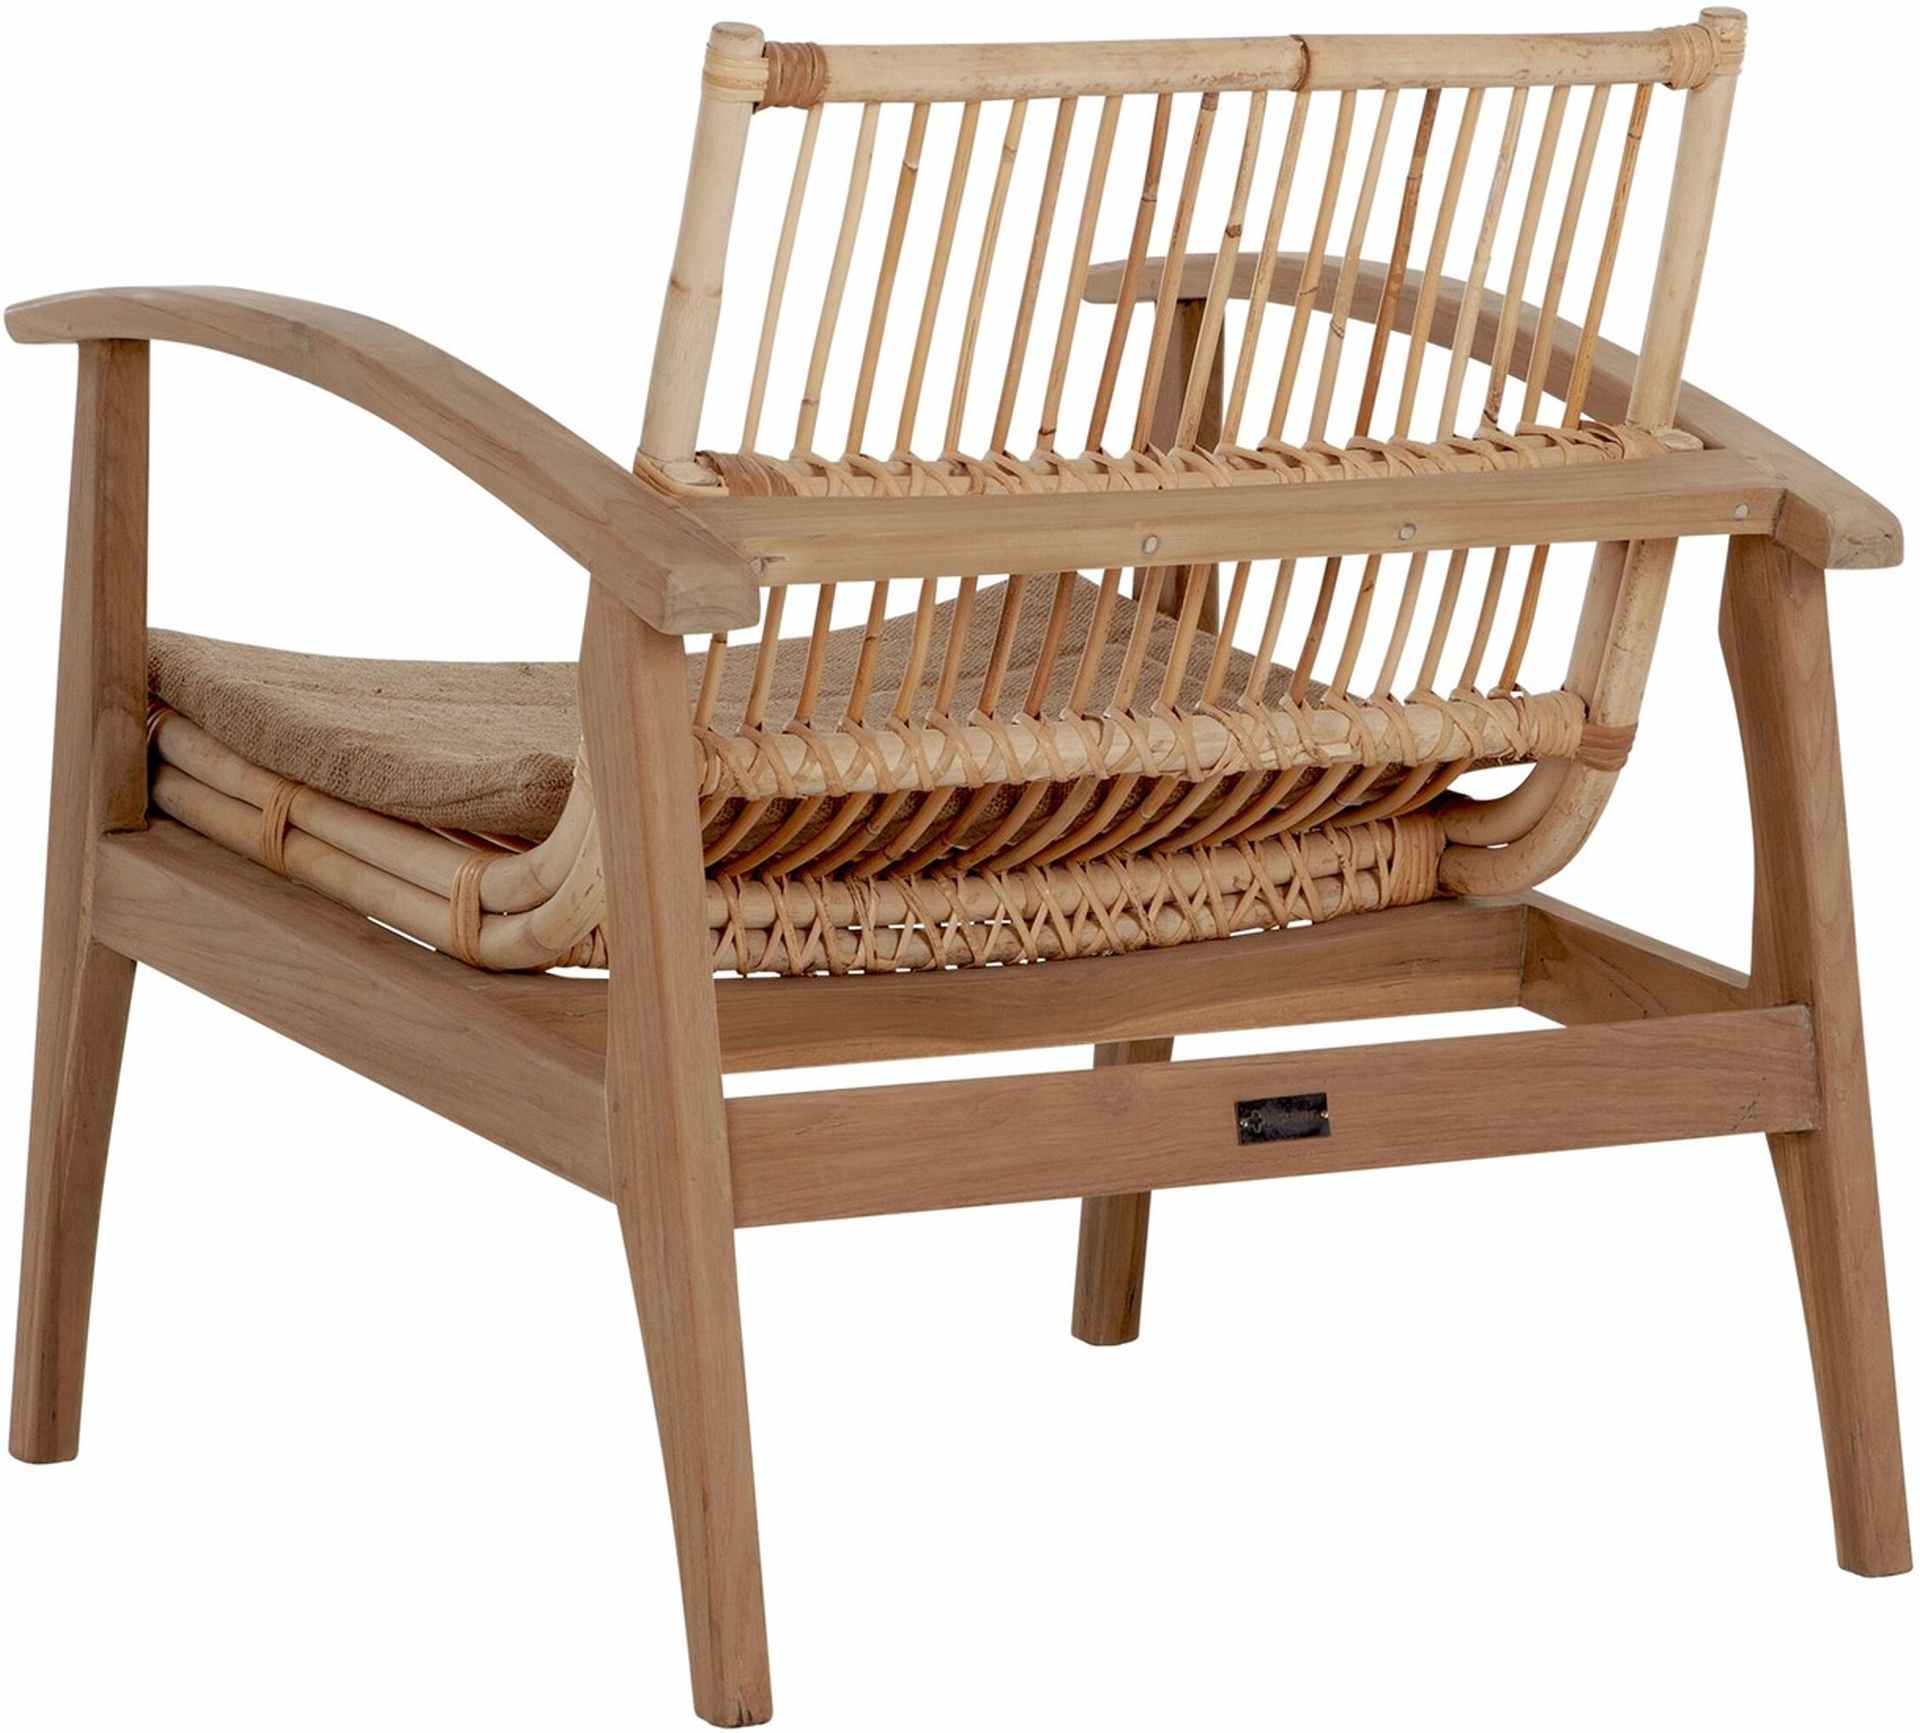 Der Loungesessel Marvin überzeugt mit seinem modernen Design aber auch mit seinem Boho Stil. Gefertigt wurde der Sessel aus Teakholz, welches einen natürlichen Farbton besitzt. Die Sitz- und Rückenfläche sind aus Rattan, welche ebenfalls einen natürlichen